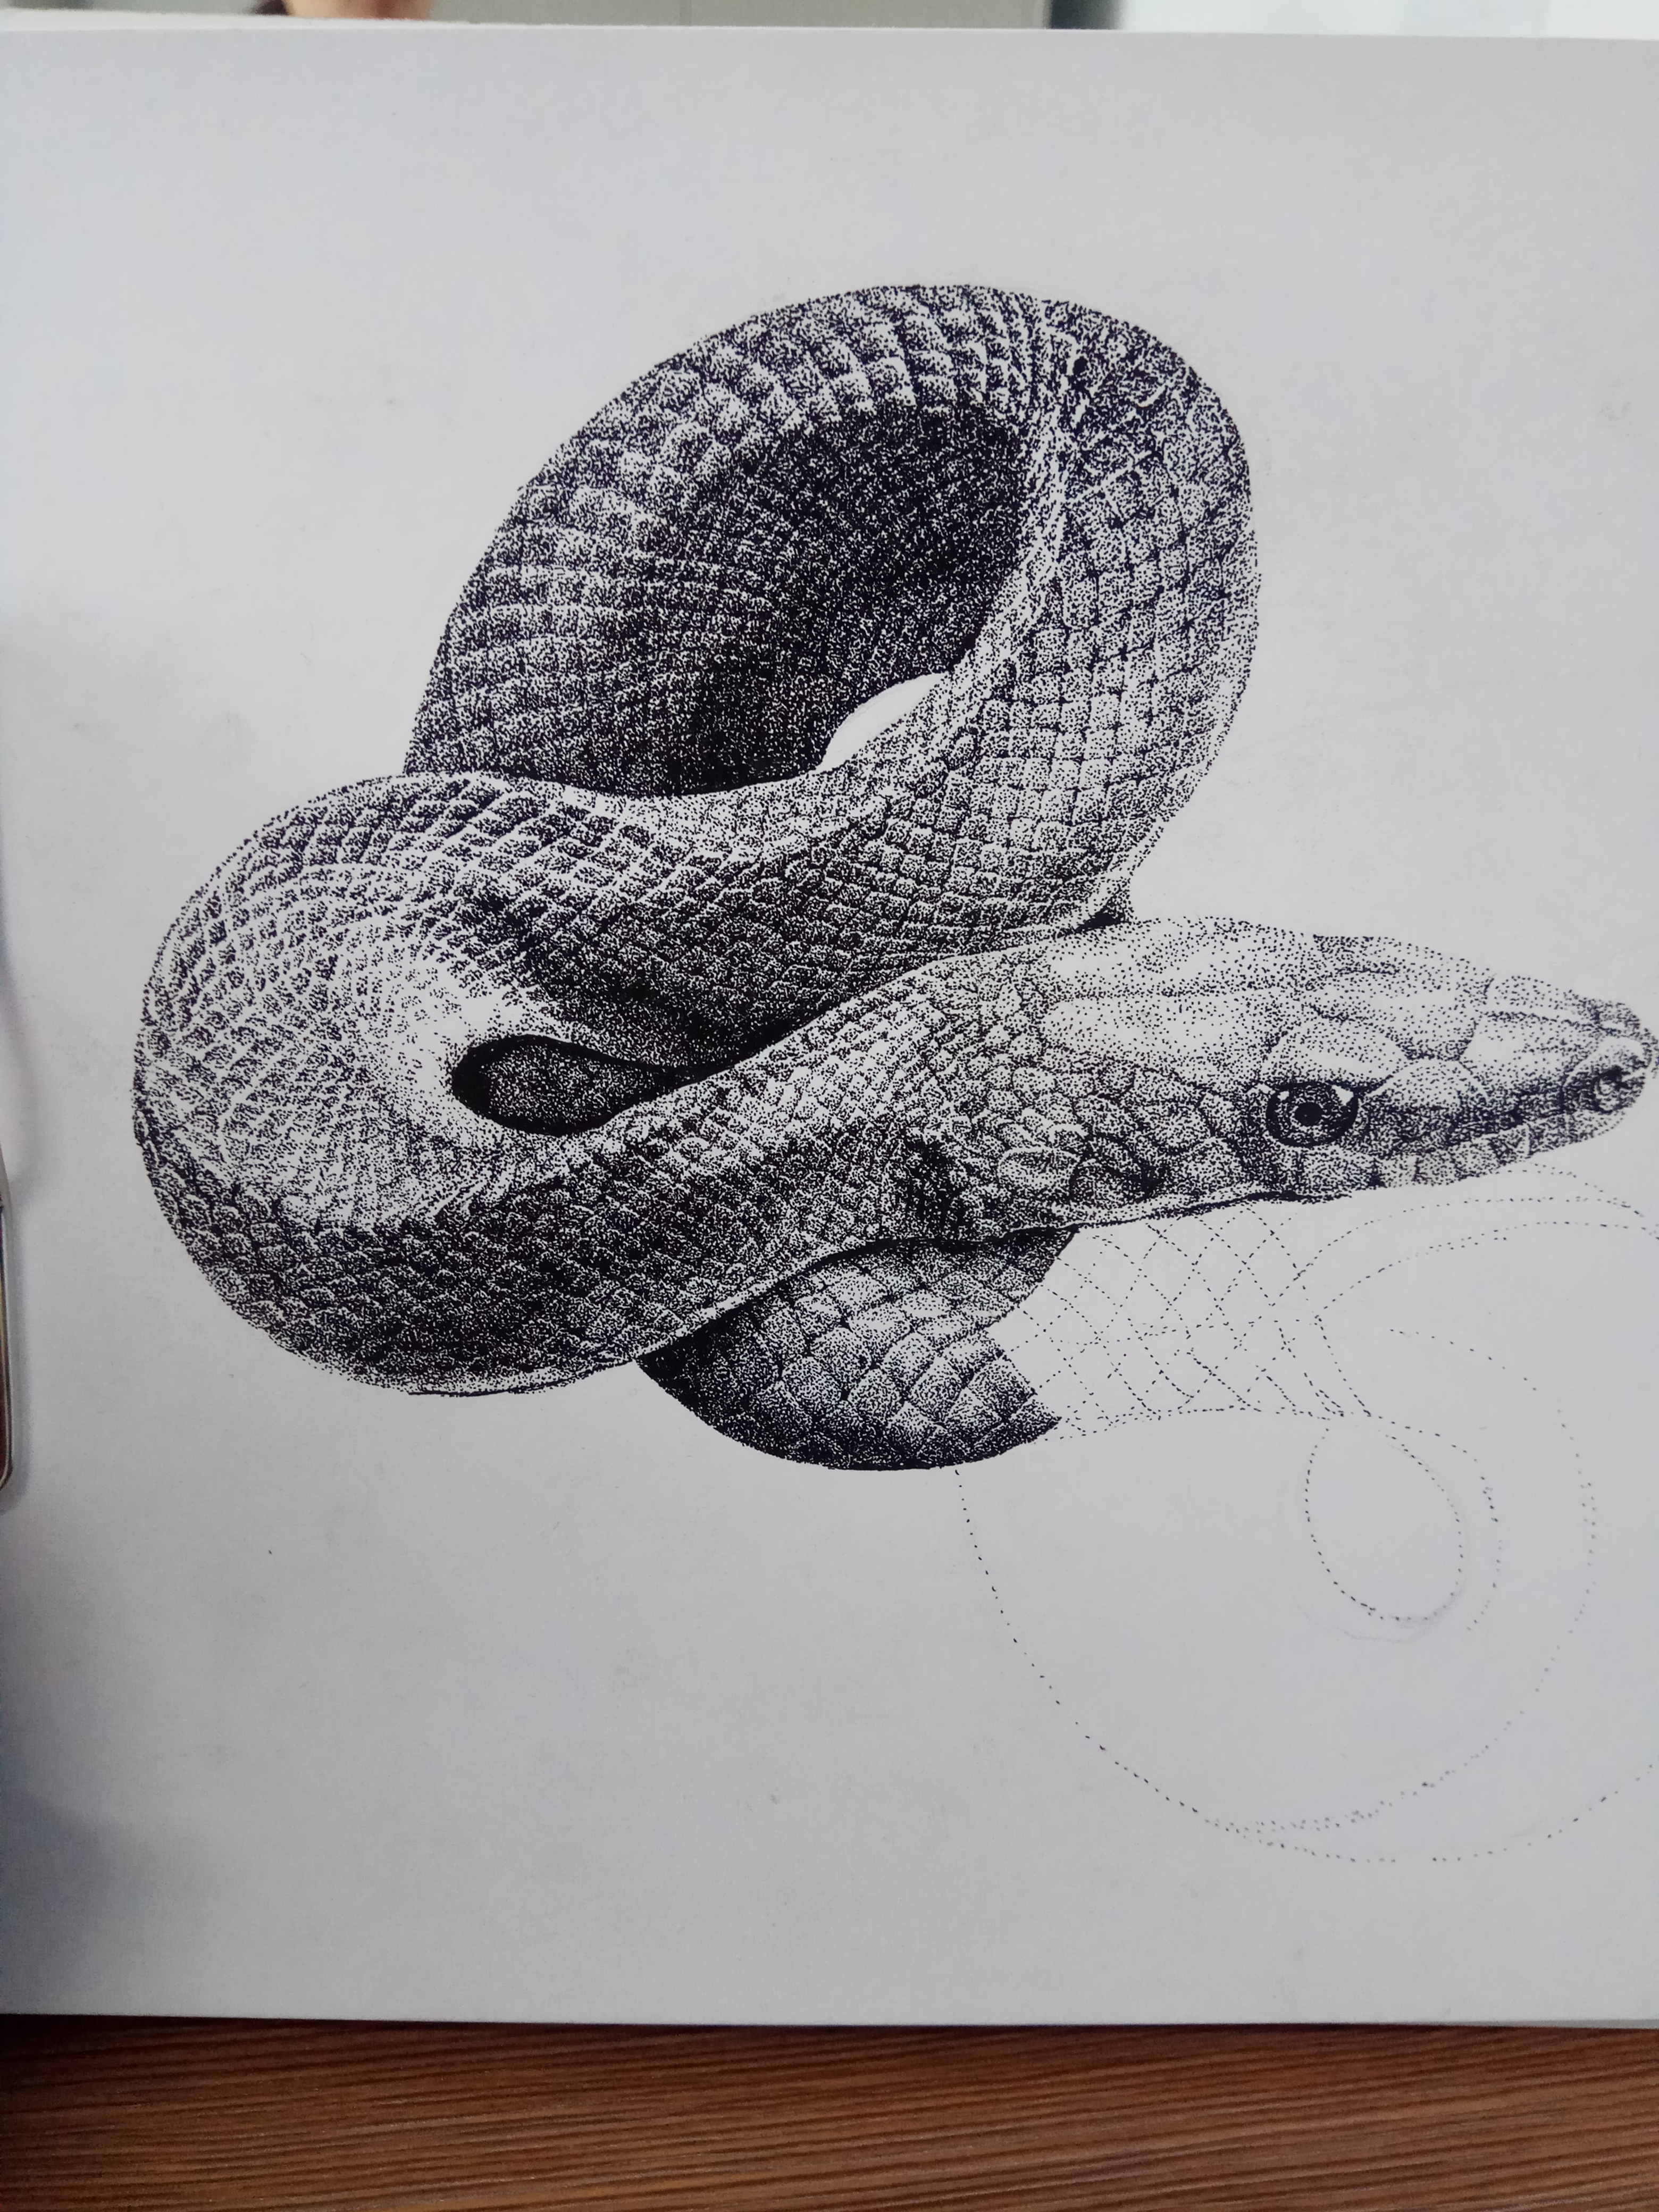 盘蛇素描图片